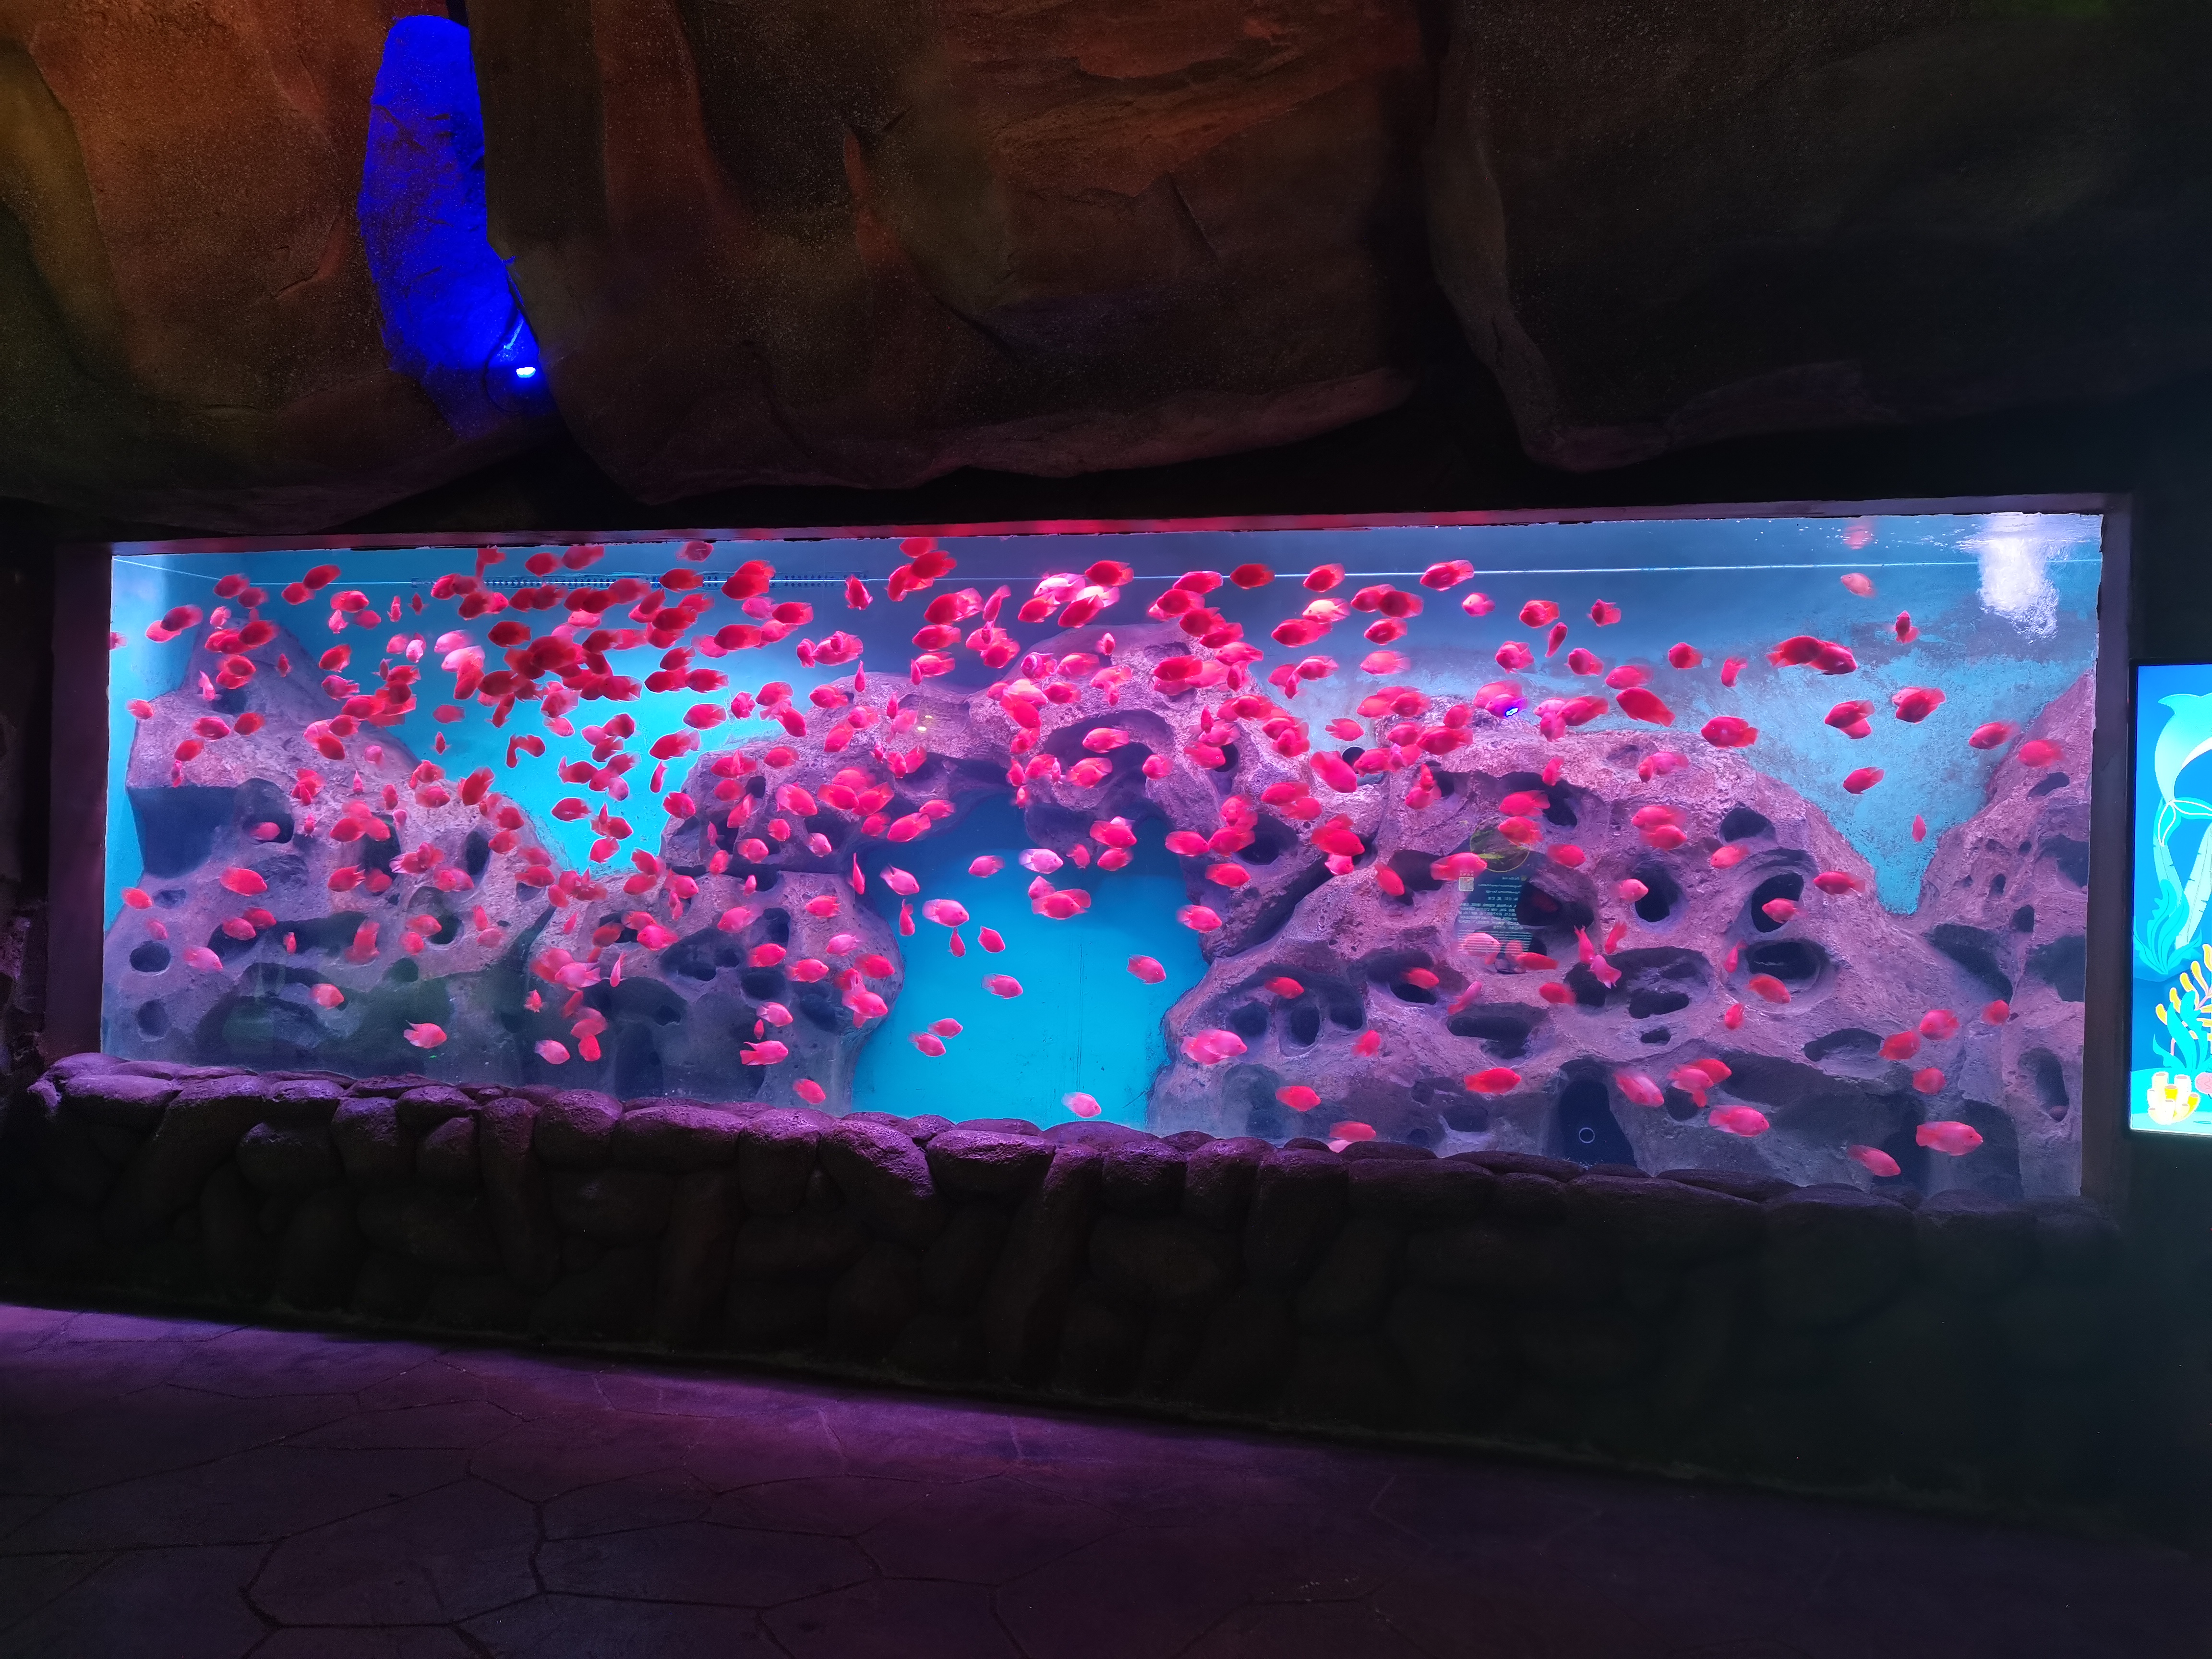 Venda grande aquário de acrílico transparente - Leyu